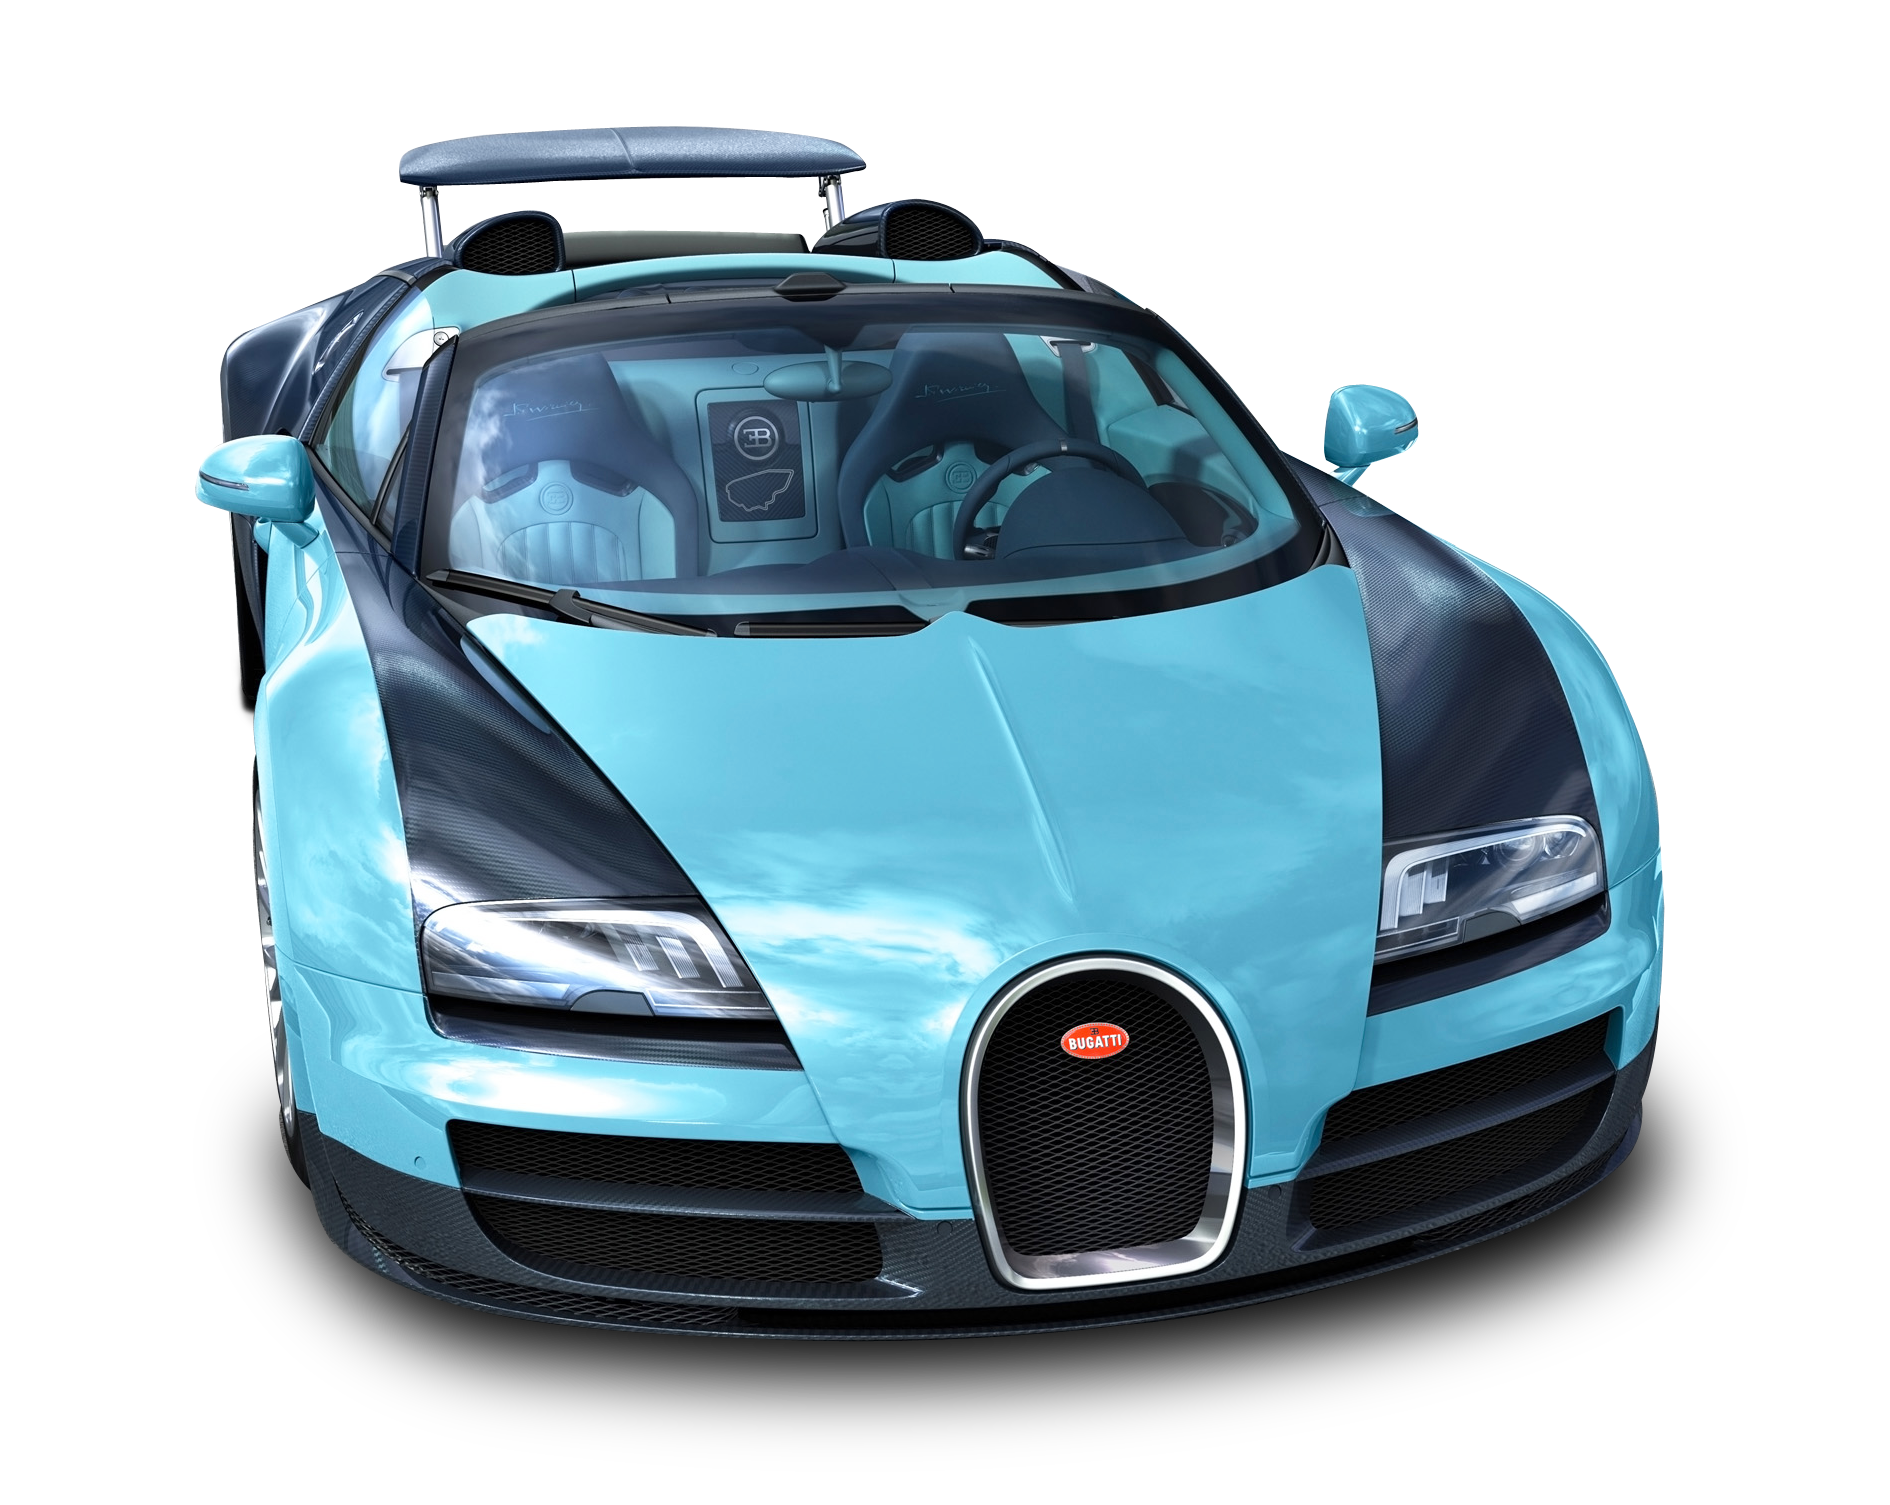 Blue Bugatti Veyron 16.4 Grand Sport Vitesse Car PNG Image